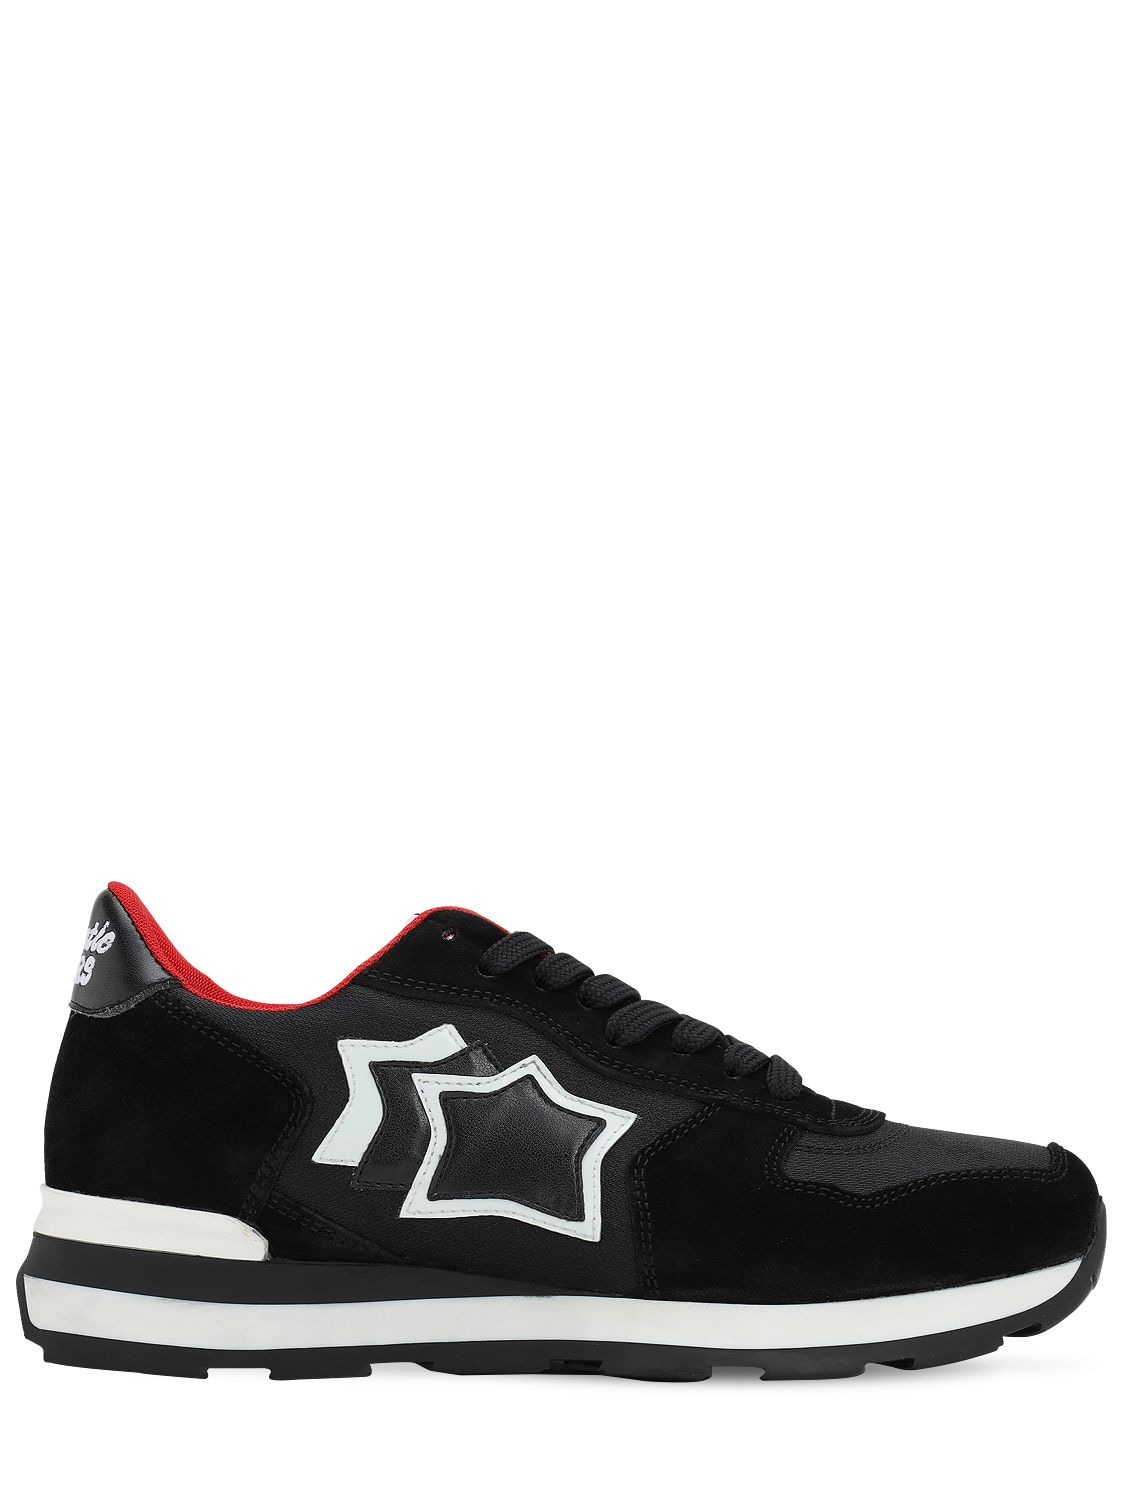 ATLANTIC STARS "VEGA STARS"麂皮&尼龙运动鞋,70II9J004-QKXBQ0S1